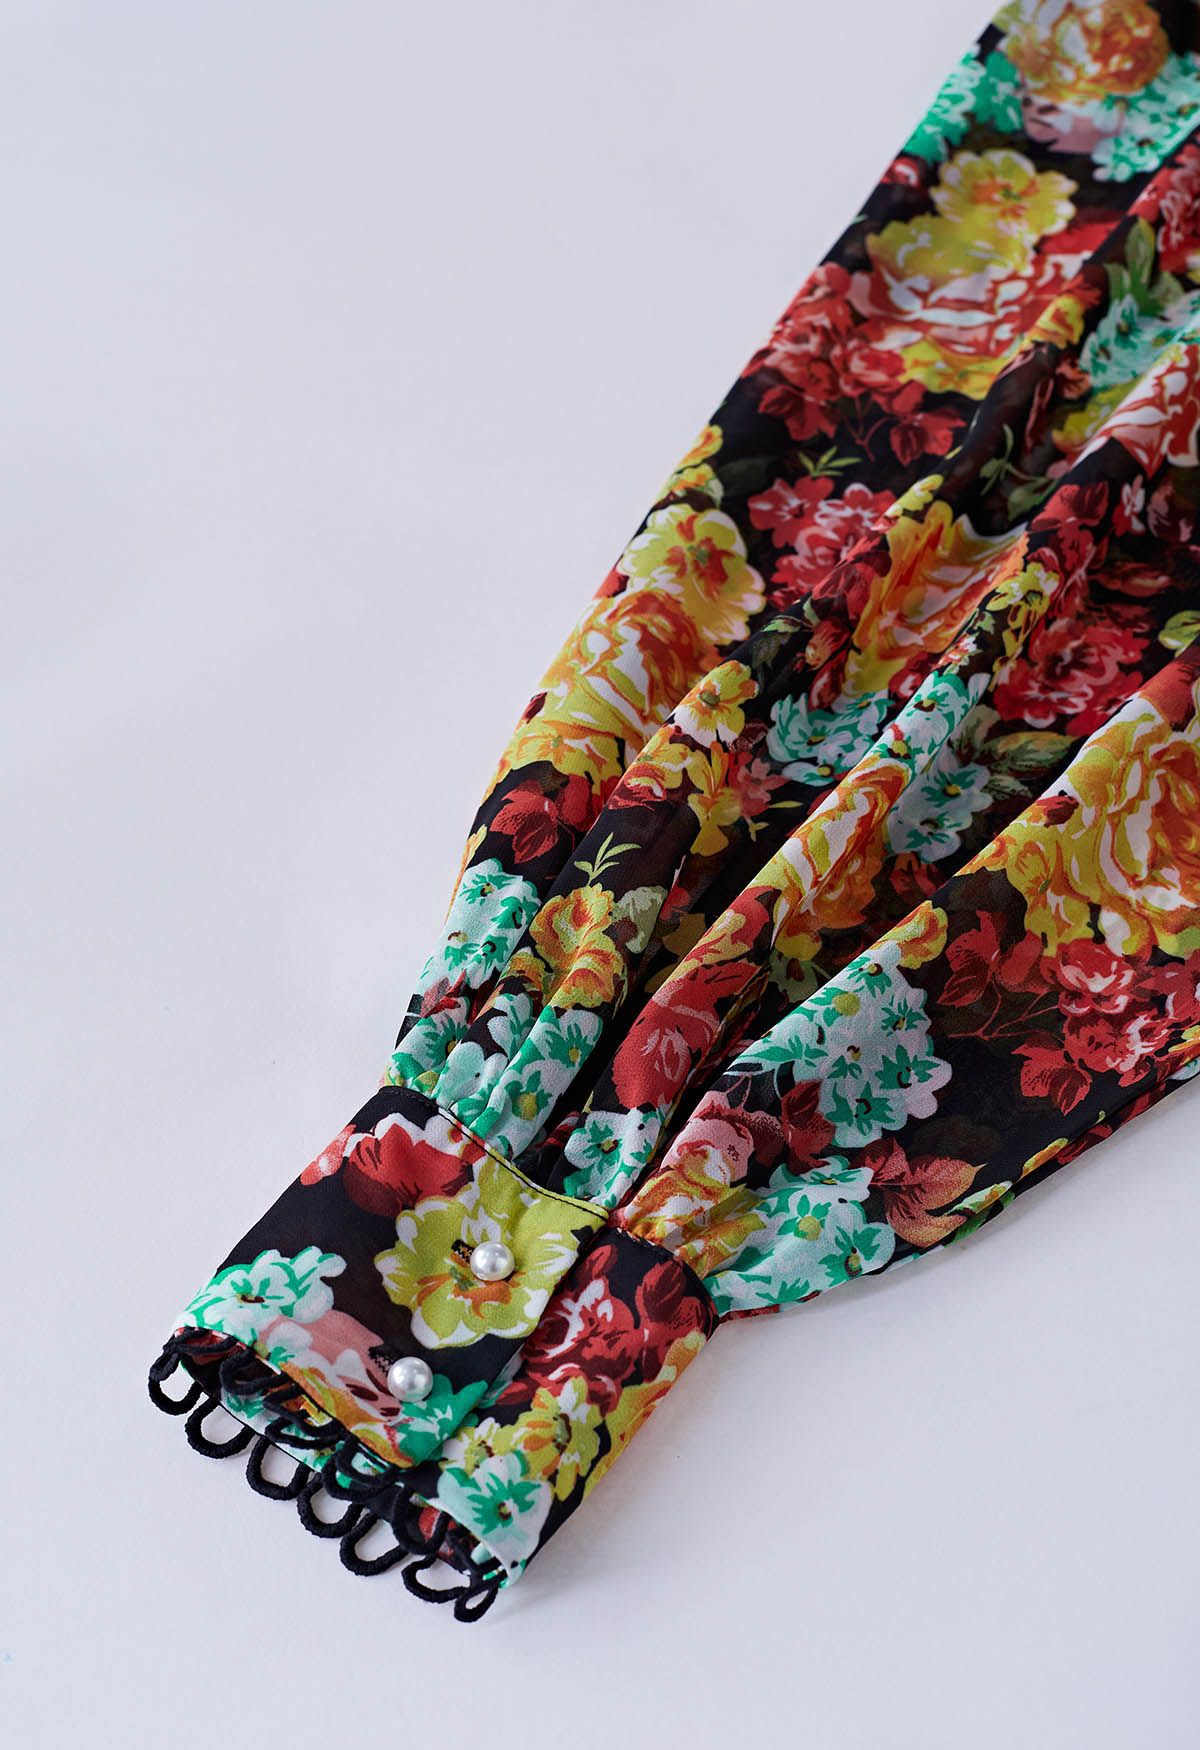 Minikleid aus Chiffon mit Blumenprint und Rüschen